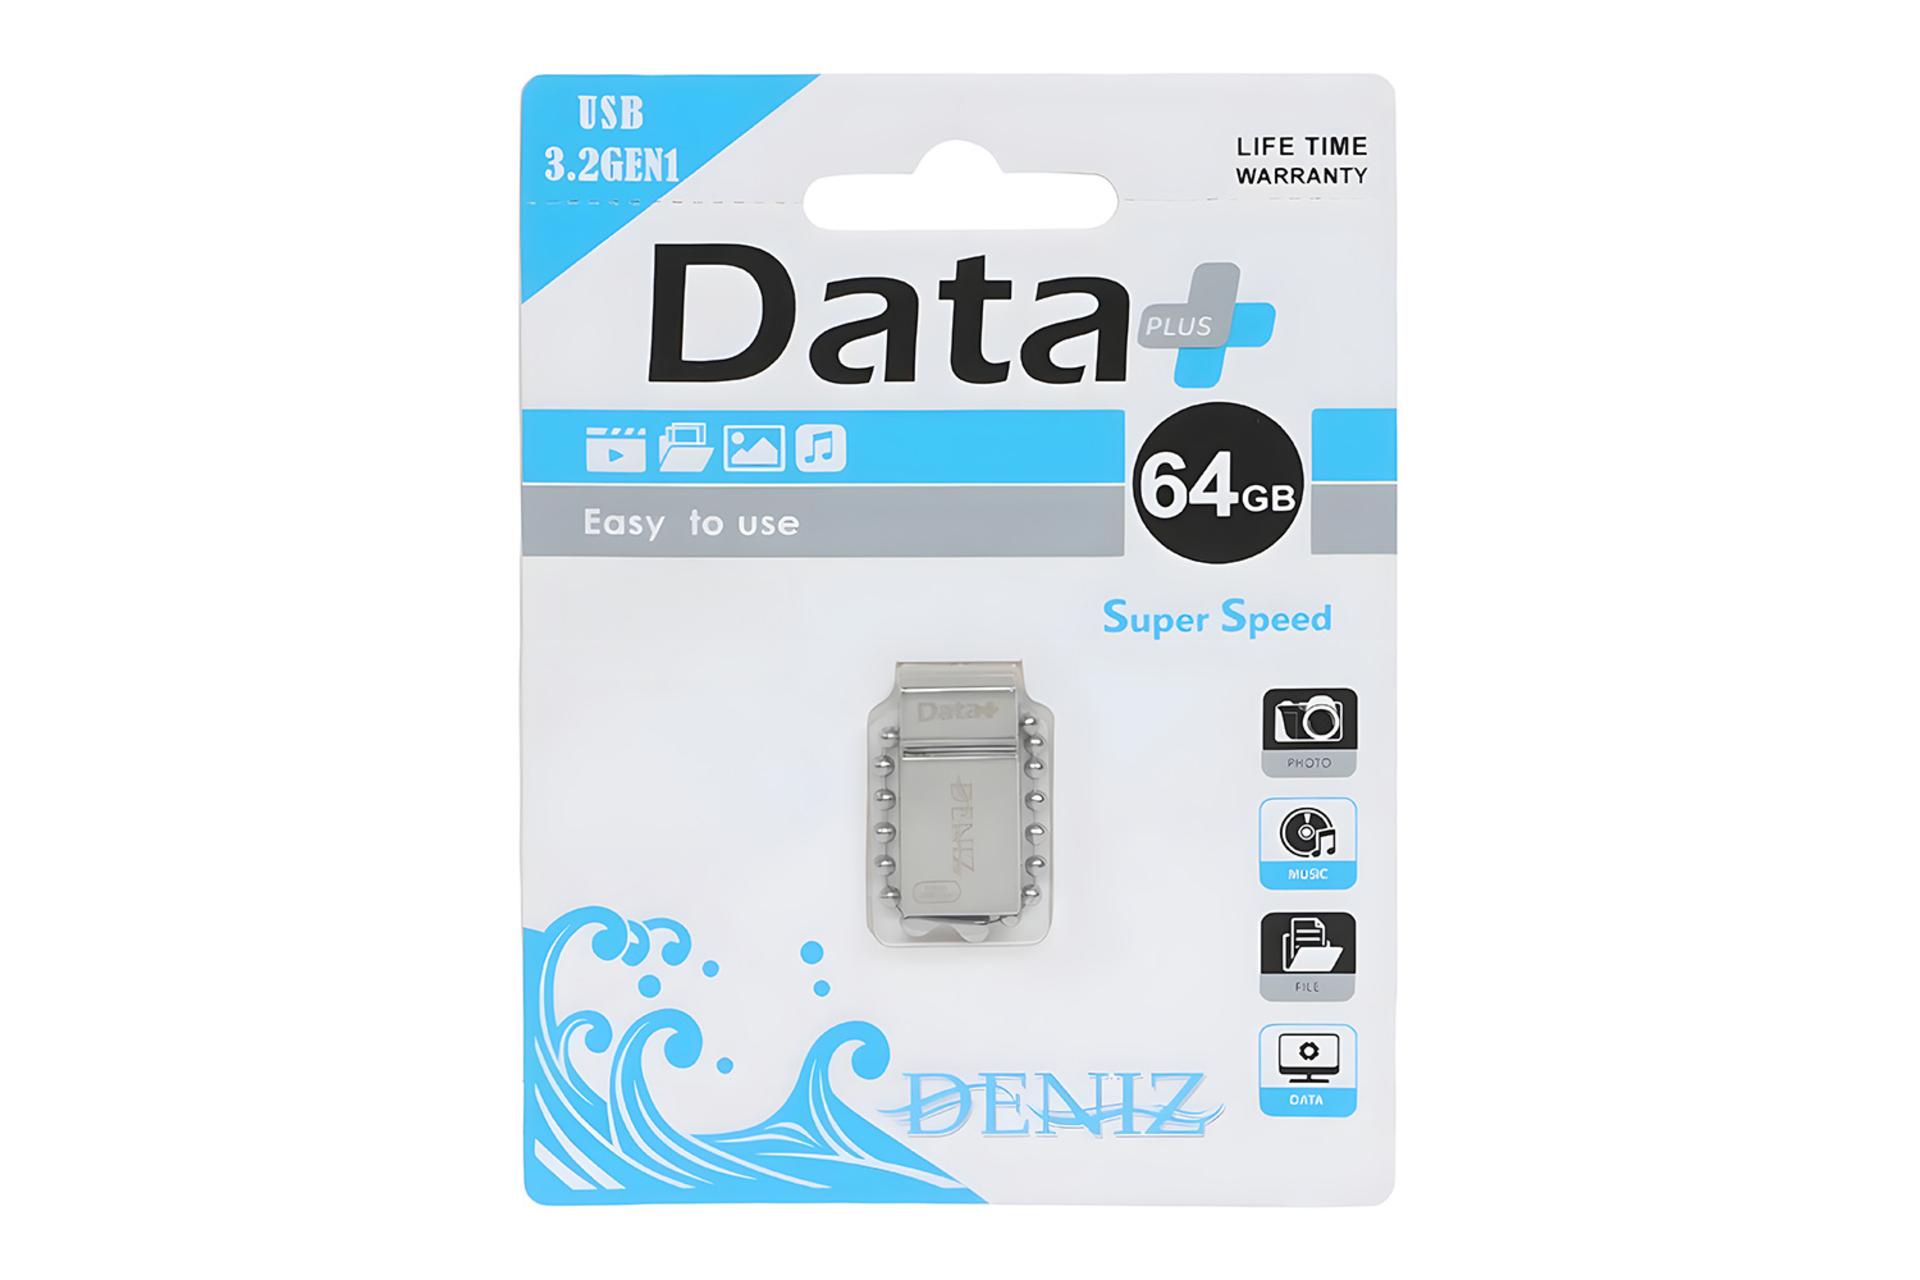 جعبه فلش مموری دیتاپلاس Data+ DENIZ 64GB USB 3.2